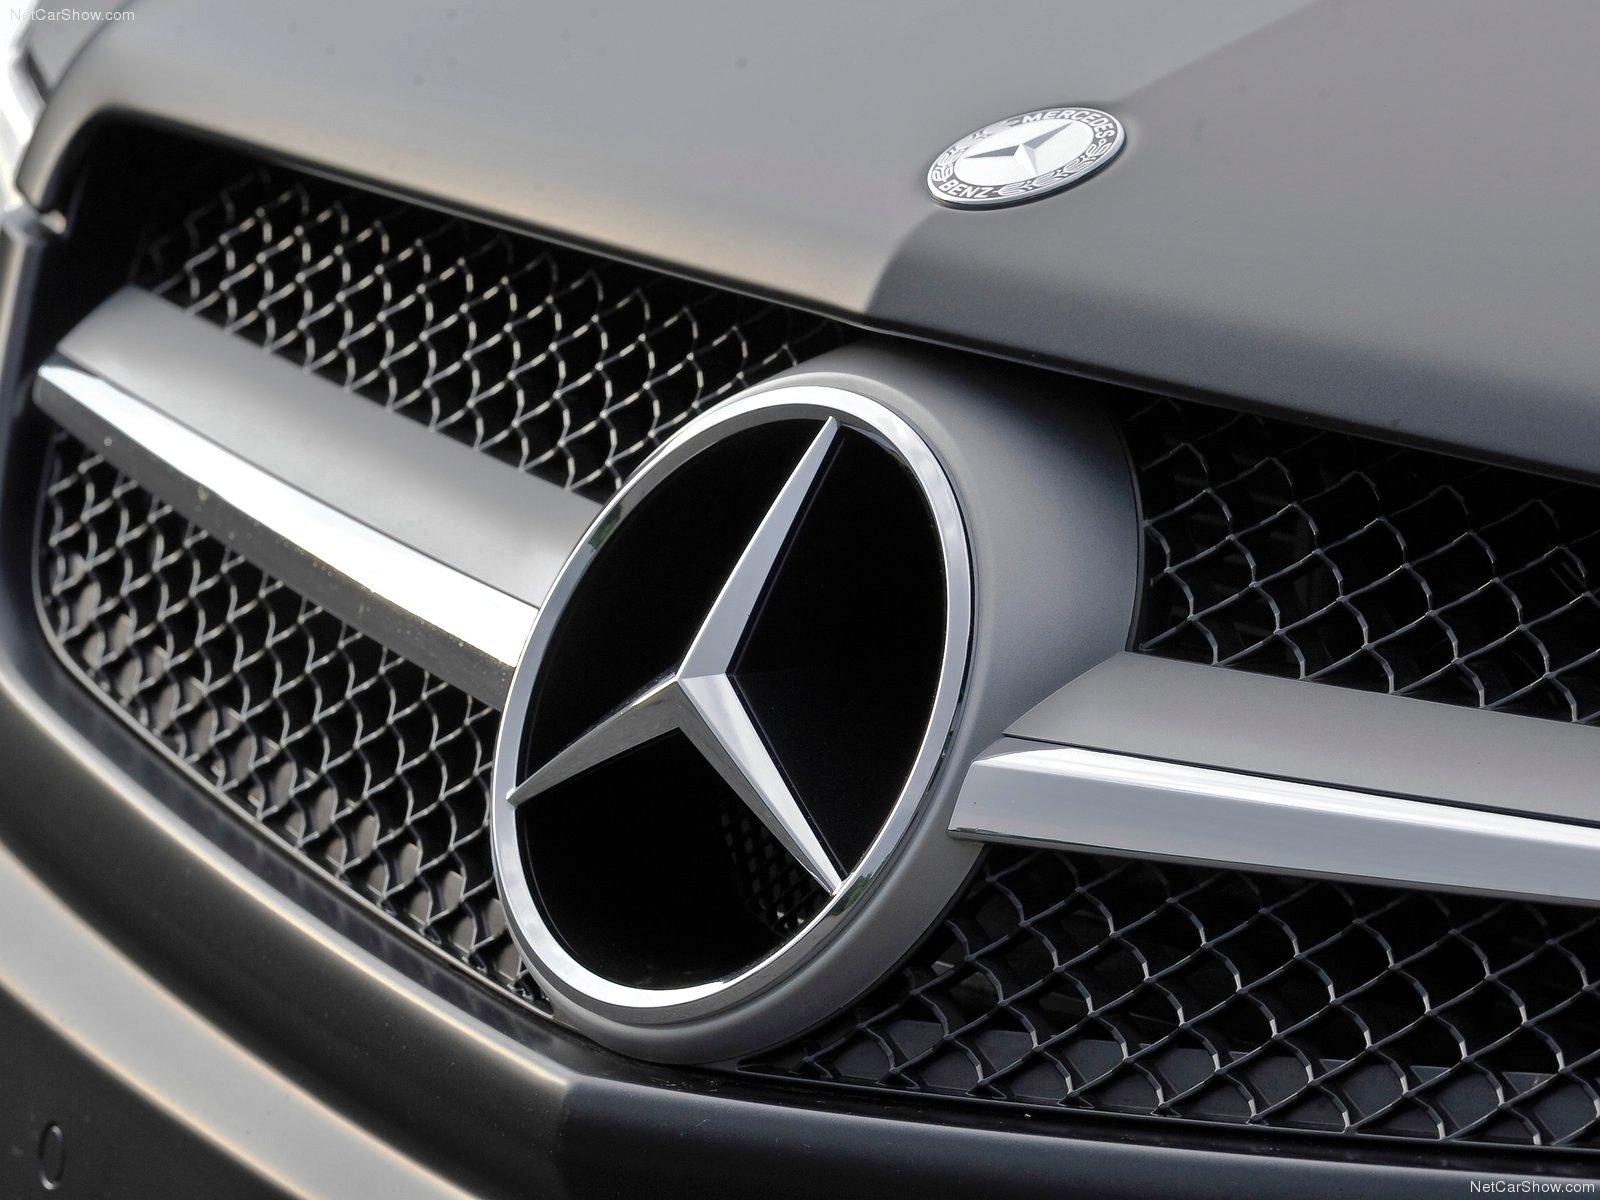 Download Mercedes Benz Logo Wallpaper 1080p #yq0ad masbradwall.com